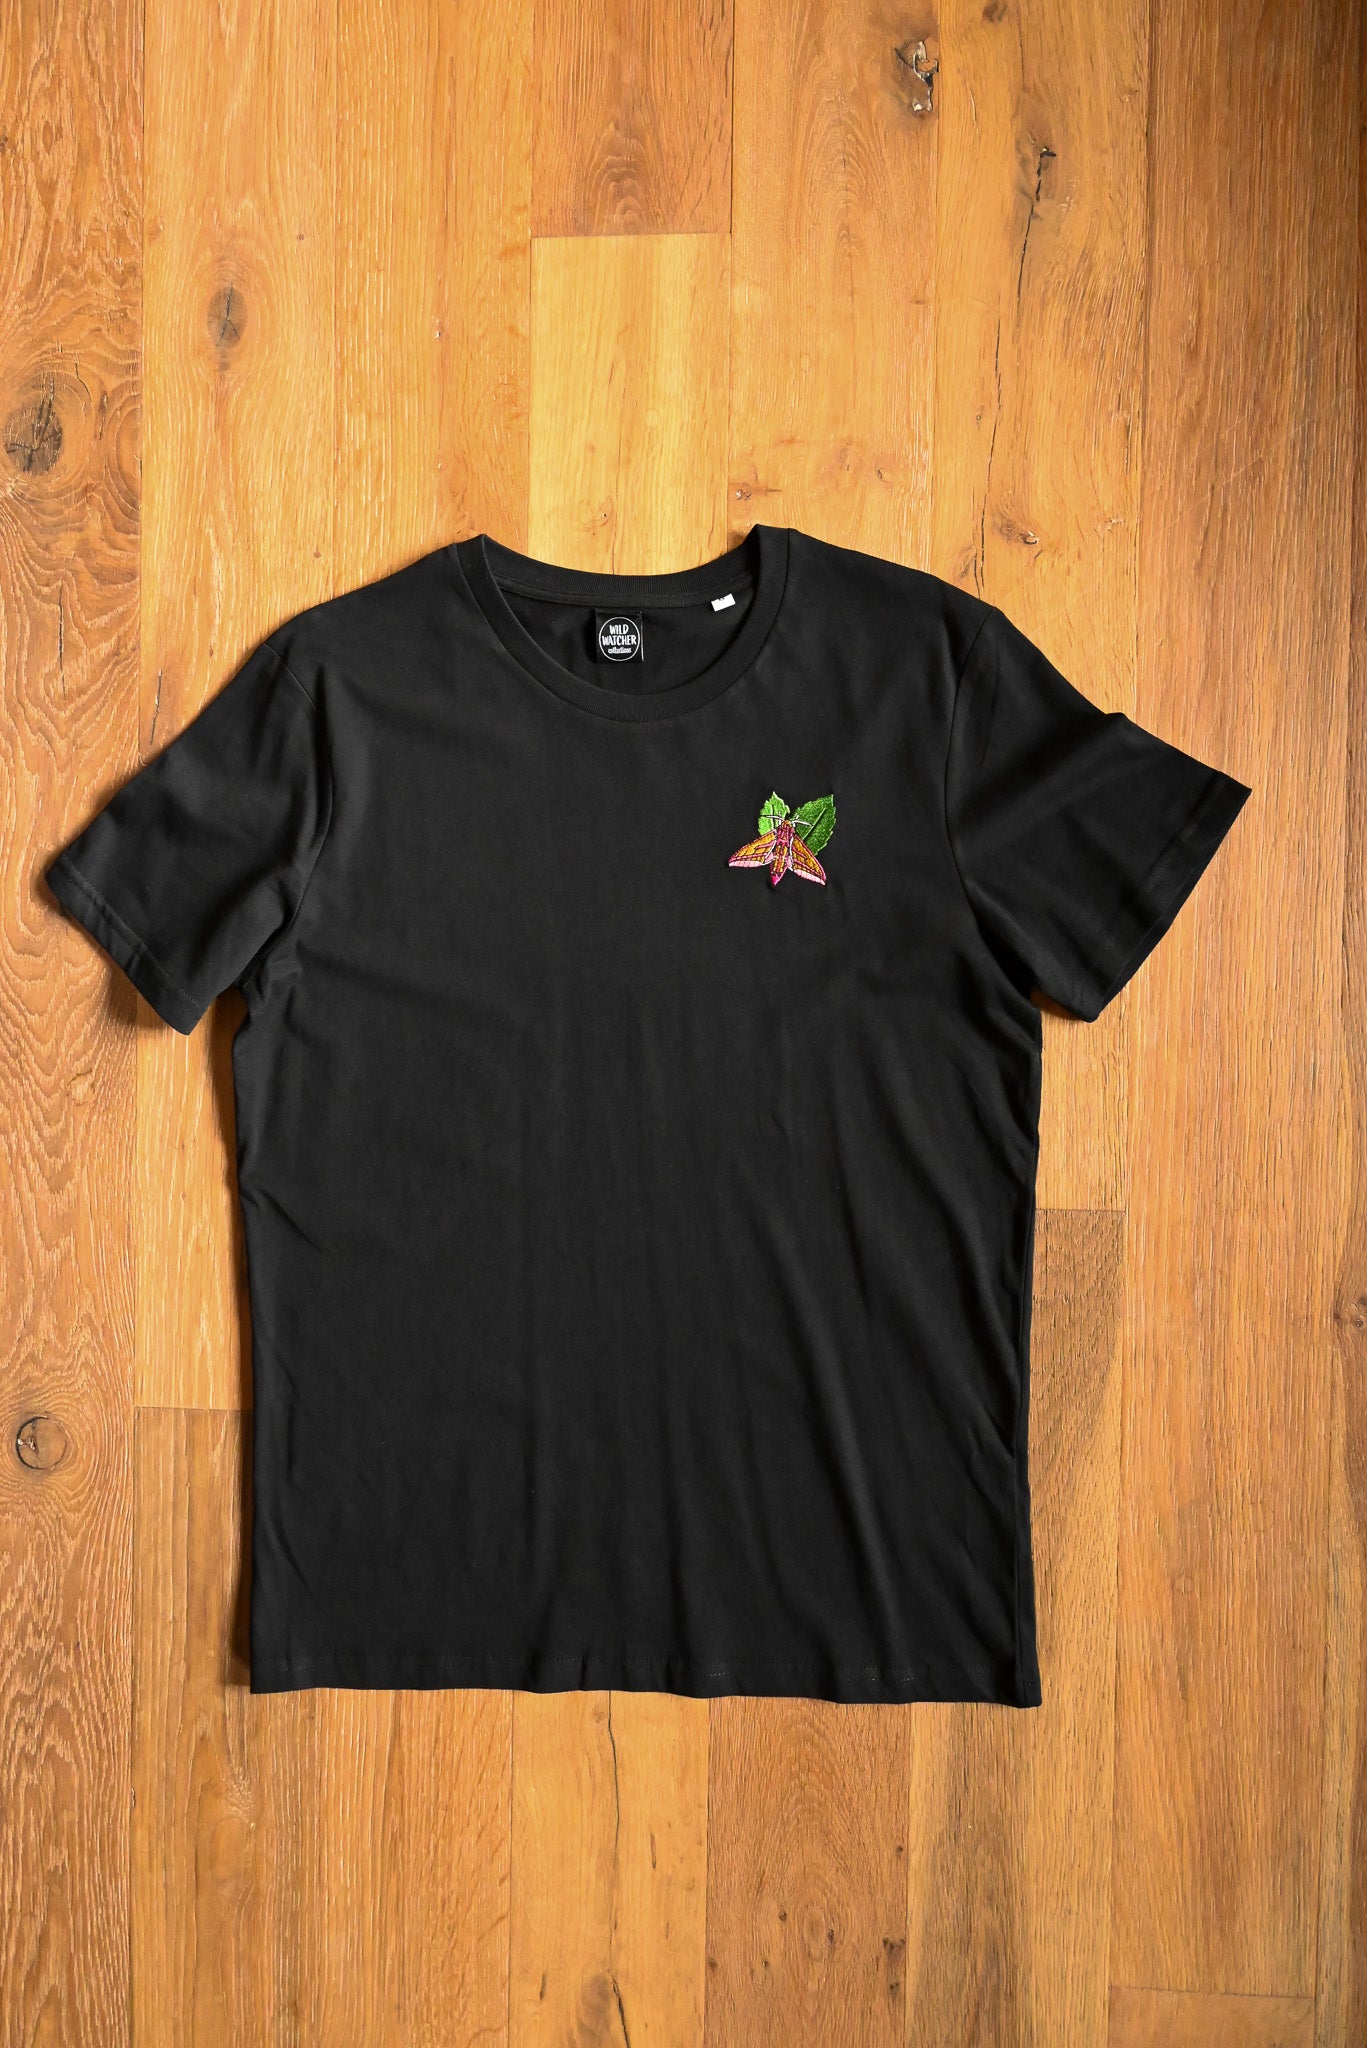 SIZE M UK 12-14 Elephant Hawk Moth Black Embroidered Unisex Organic Cotton T-shirts